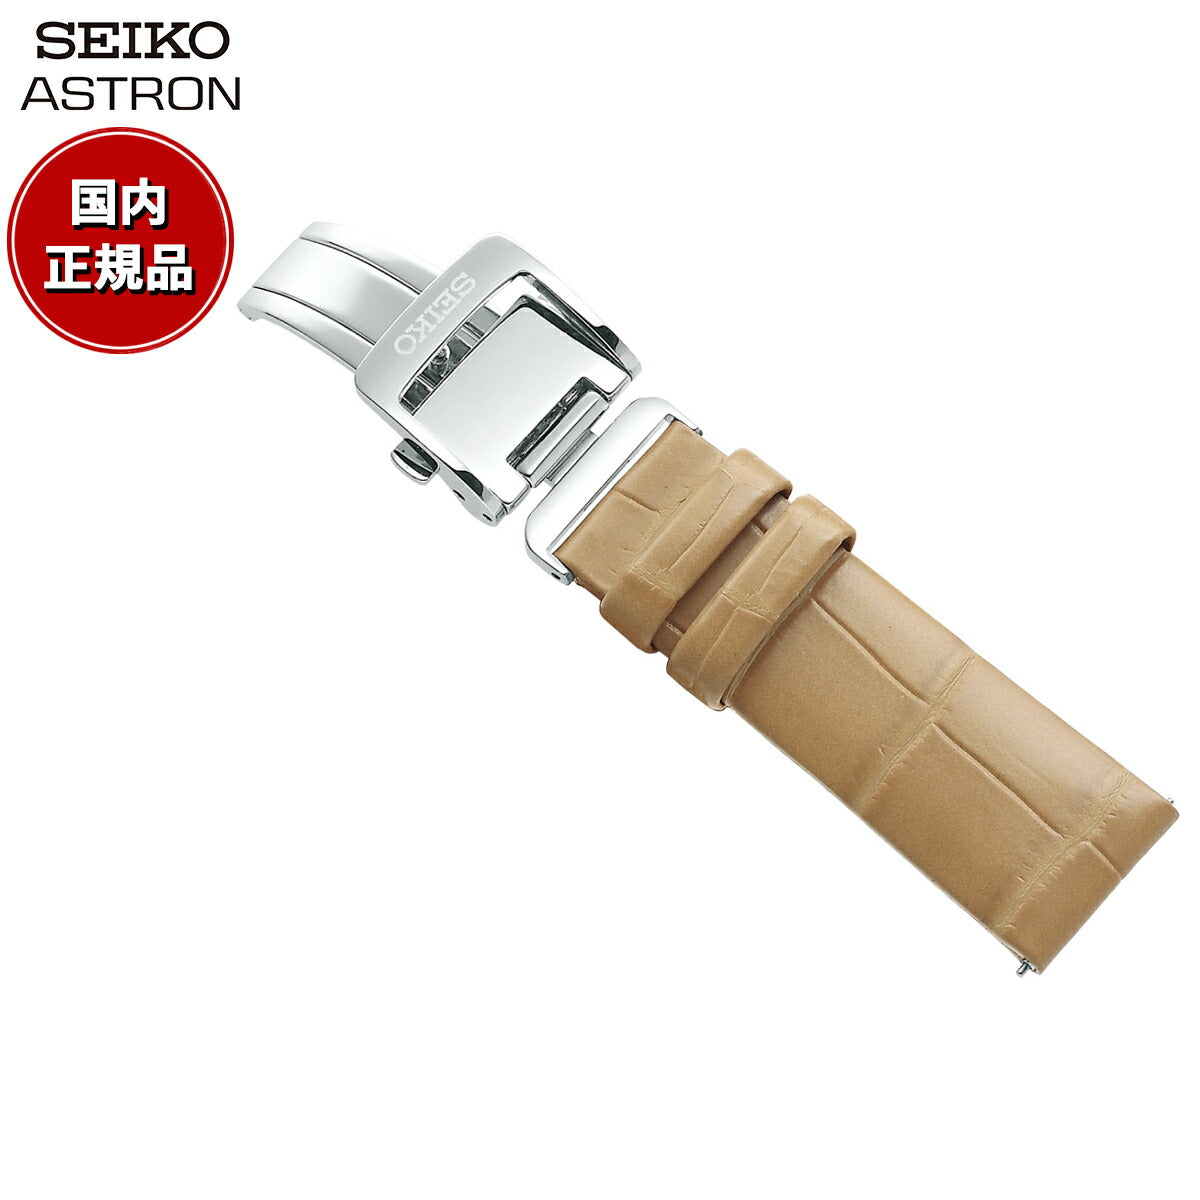 セイコー アストロン SEIKO ASTRON 腕時計 革製 替えバンド ベルト レディース ベージュ クロコダイル 18mm 婦人標準サイ –  neel selectshop